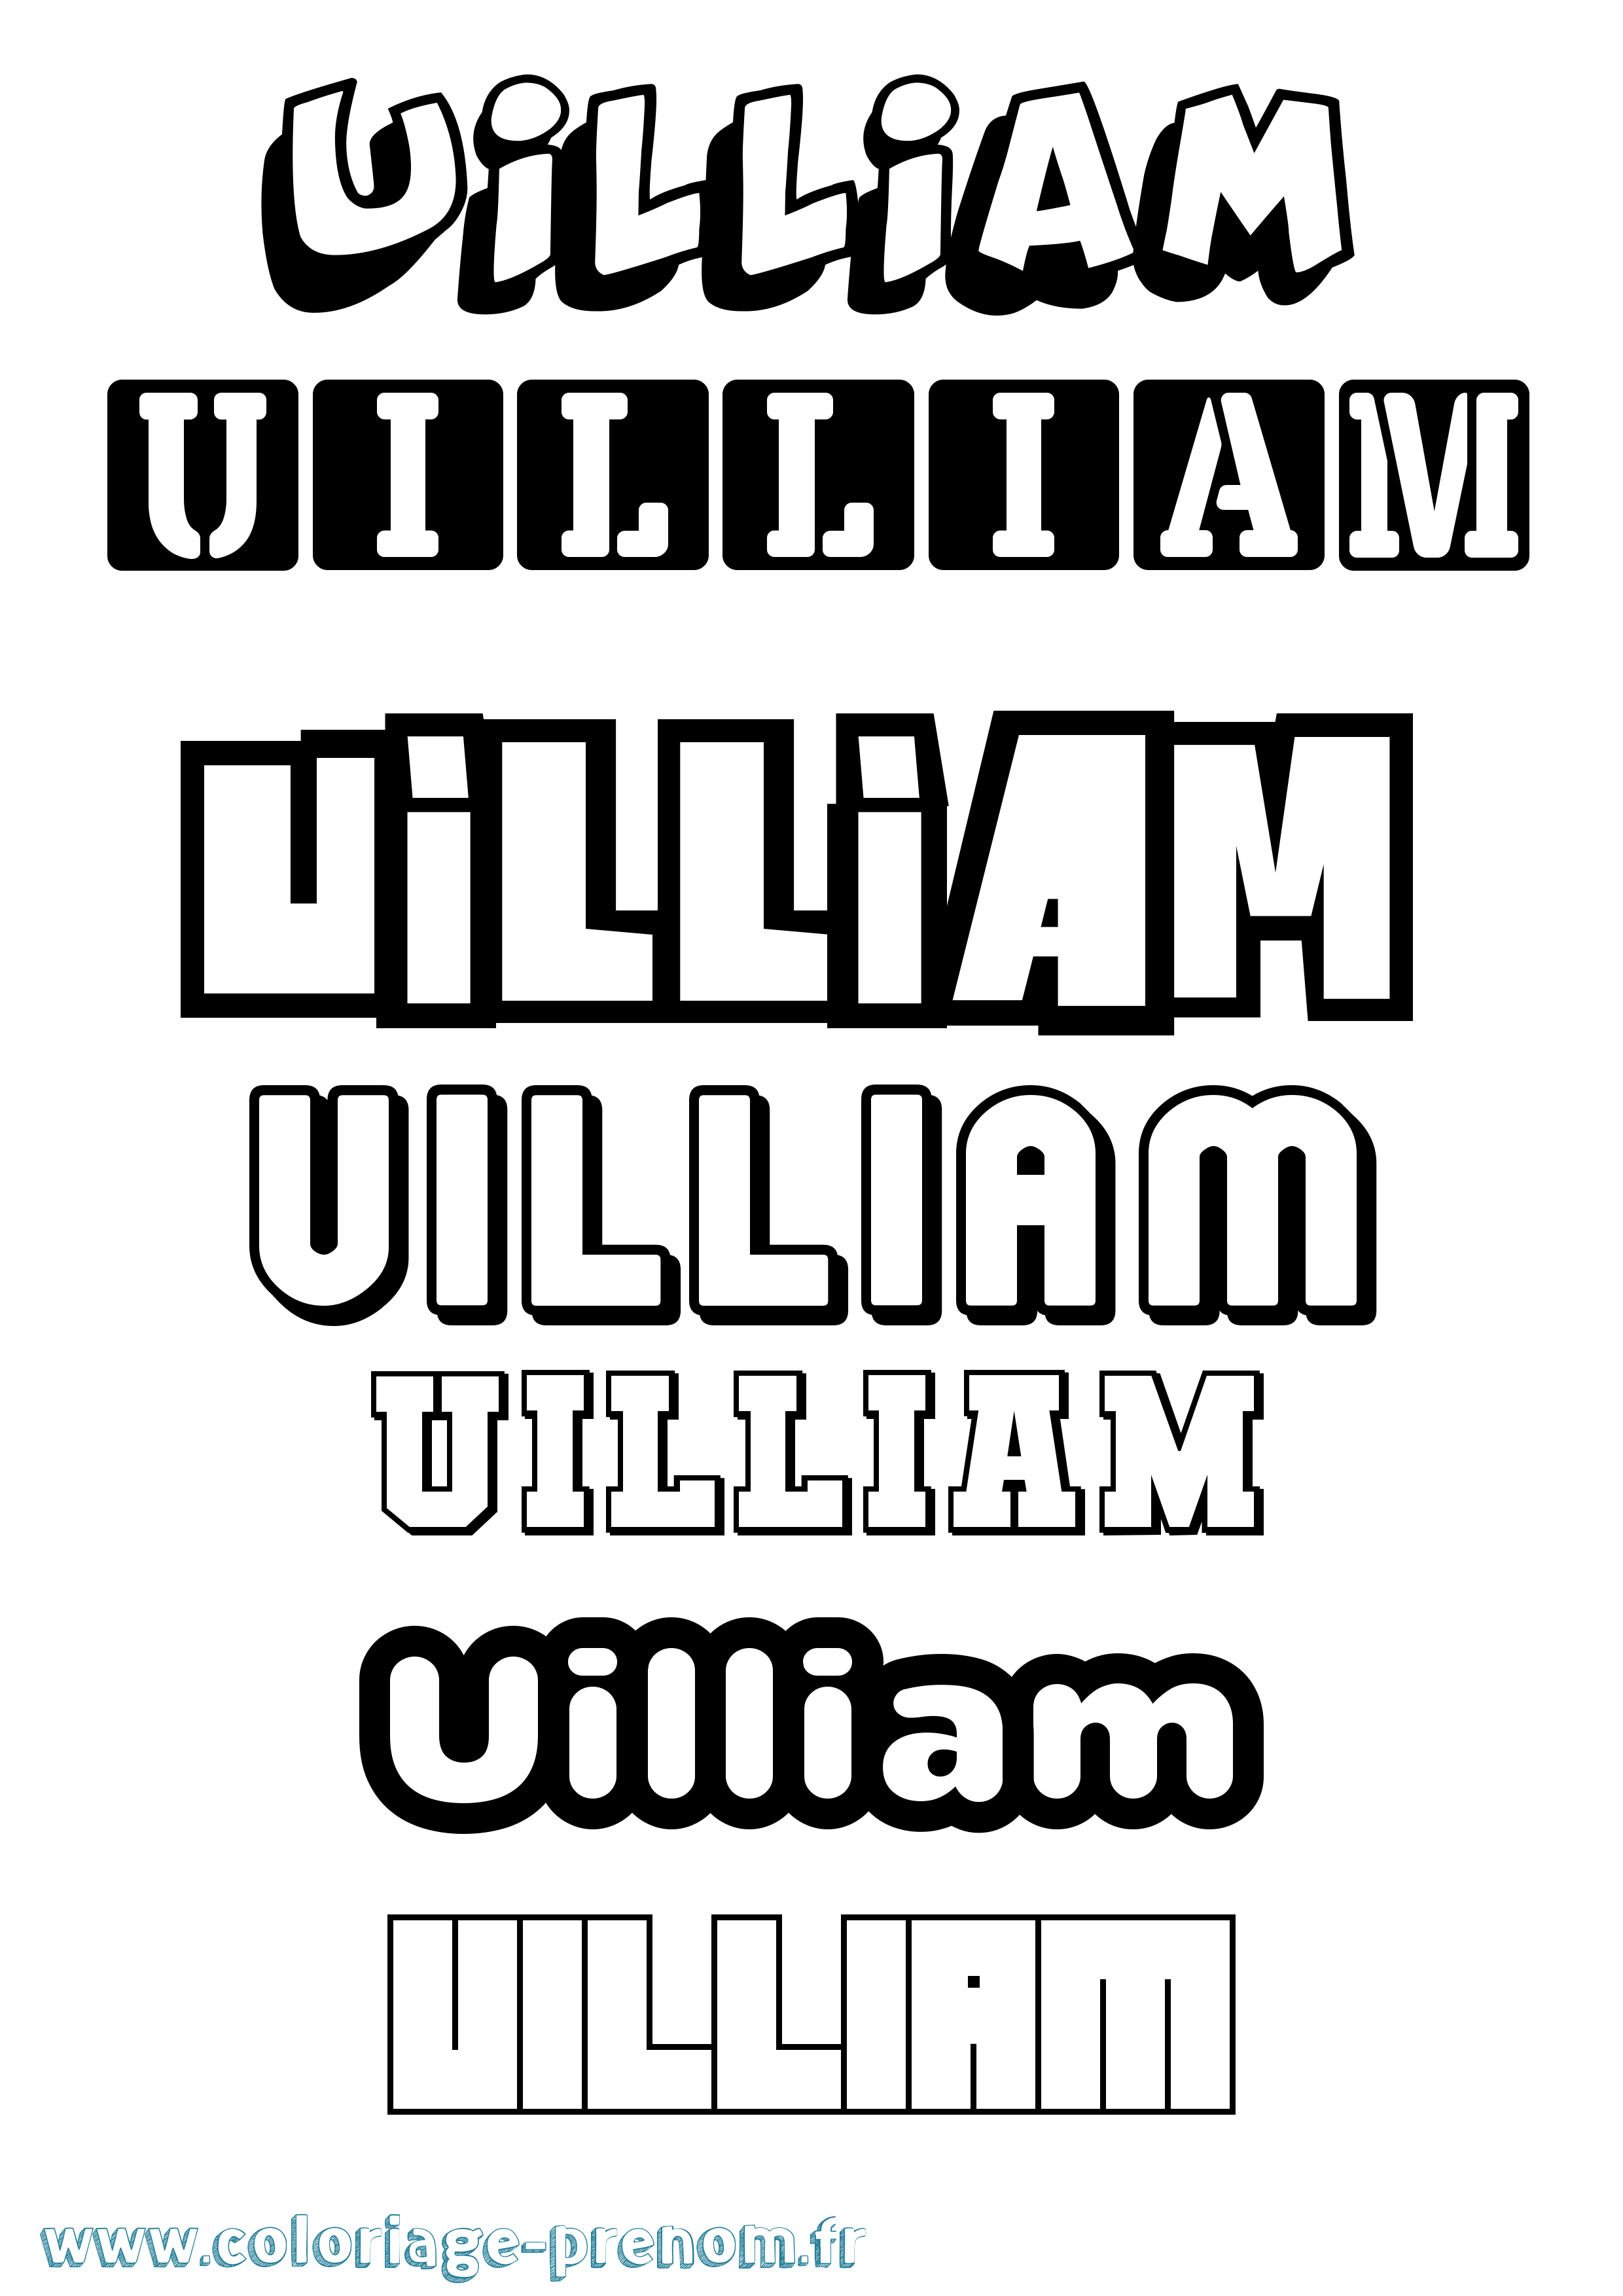 Coloriage prénom Uilliam Simple